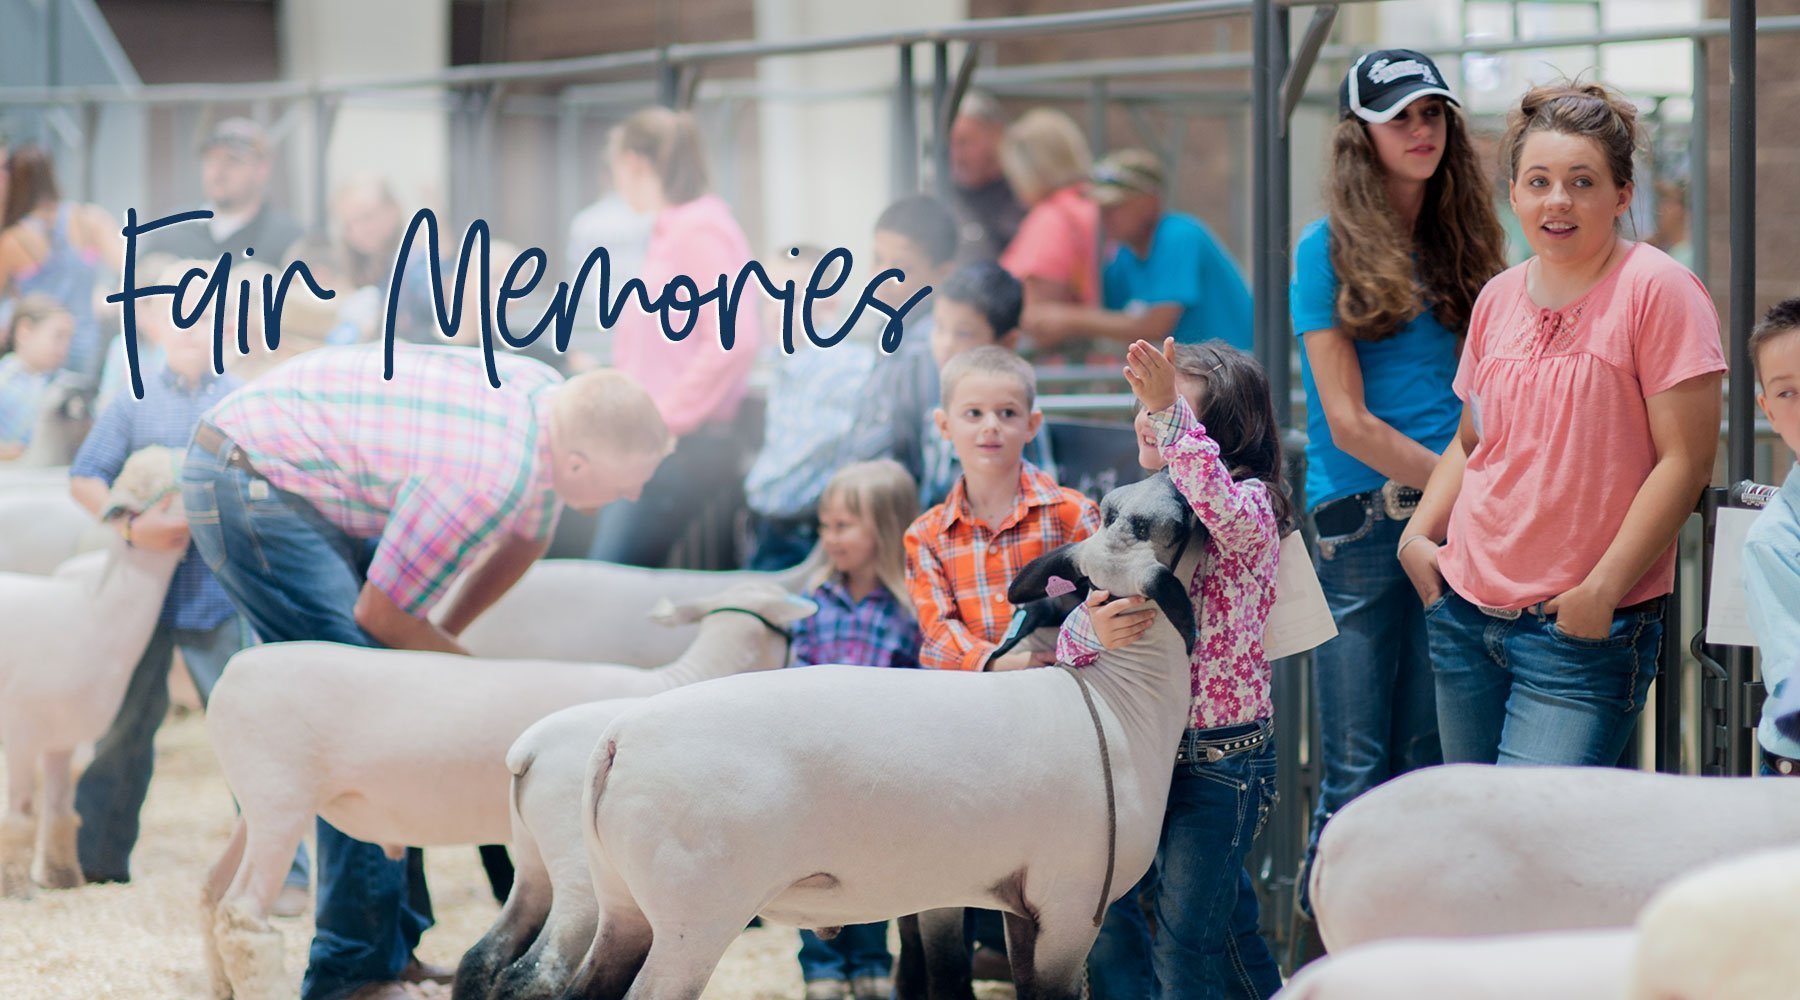 County Fair Memories 2015 - Livestock & Co.